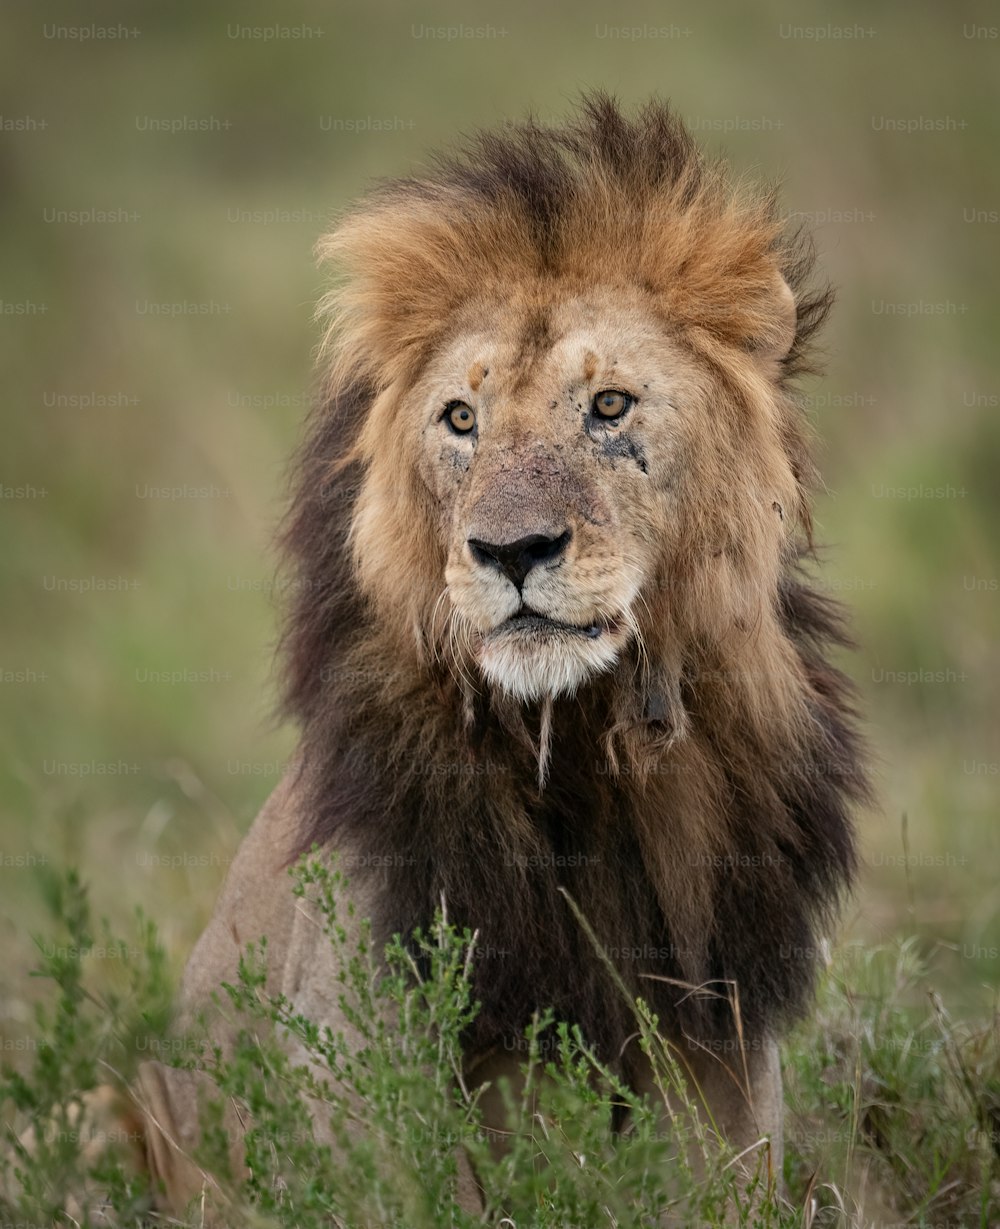 Ein Löwenporträt in der Massai Mara, Afrika